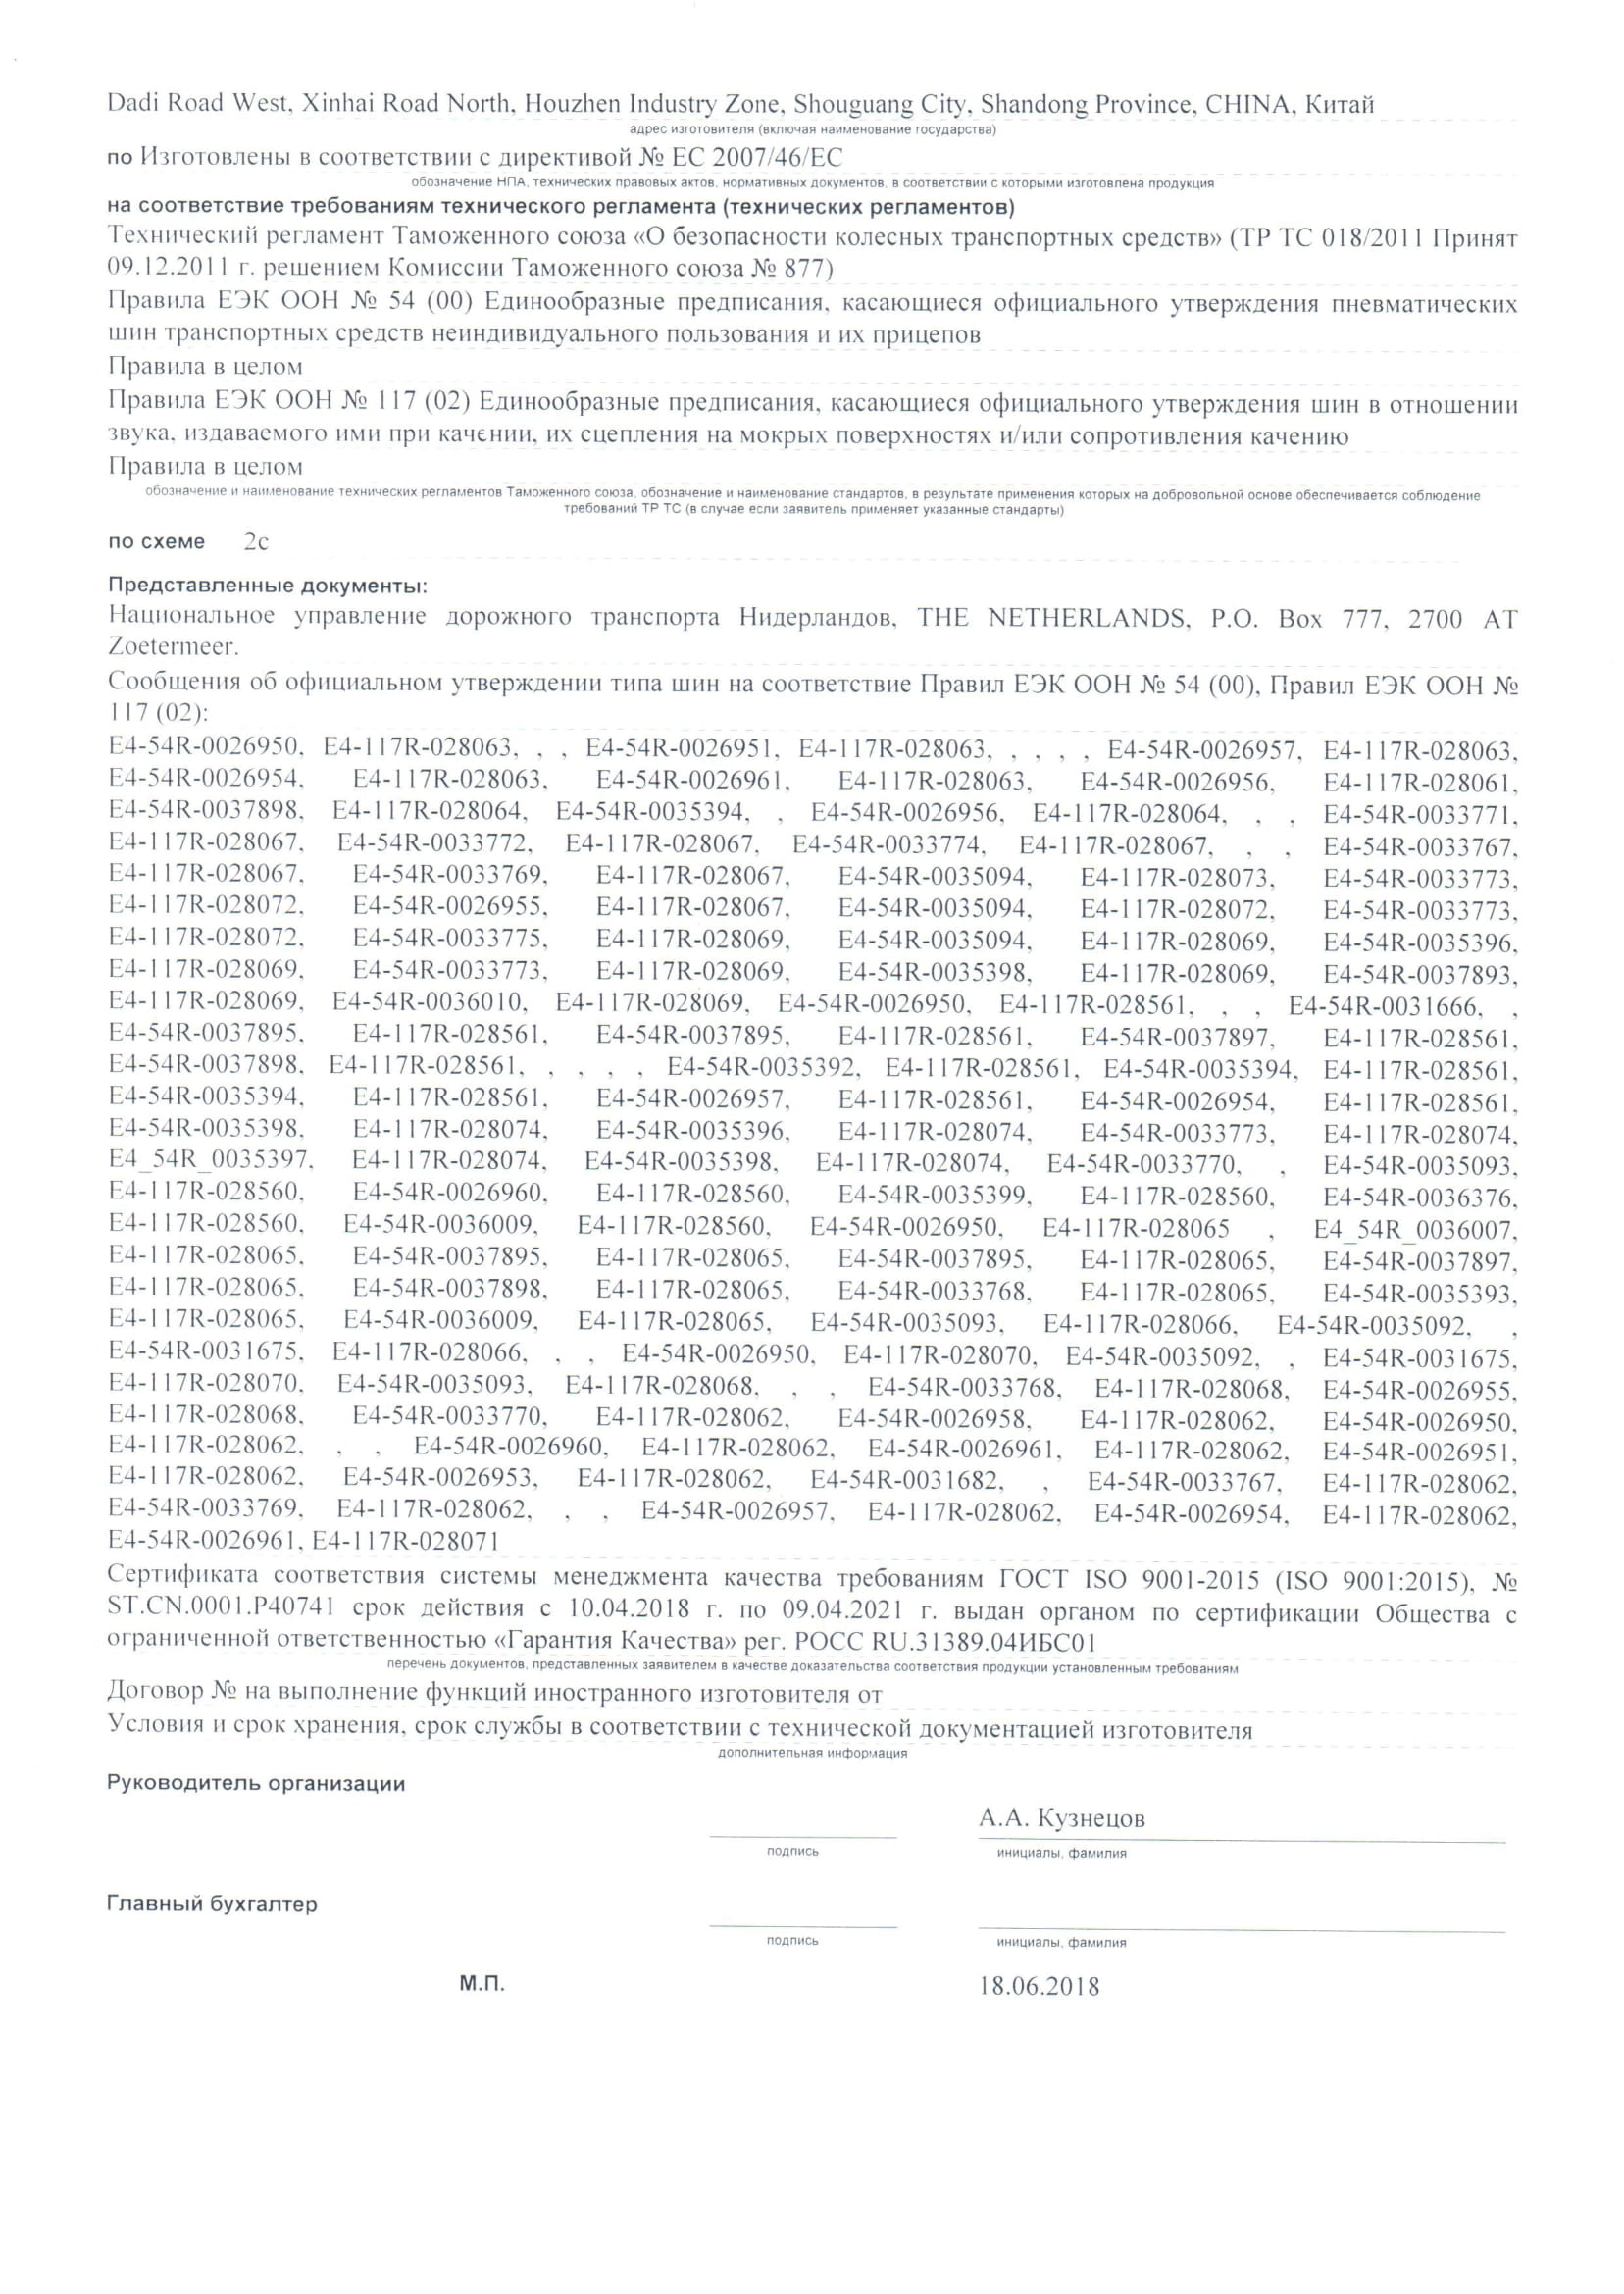 Заявка на проведение сертификации продукции (стр. 2)